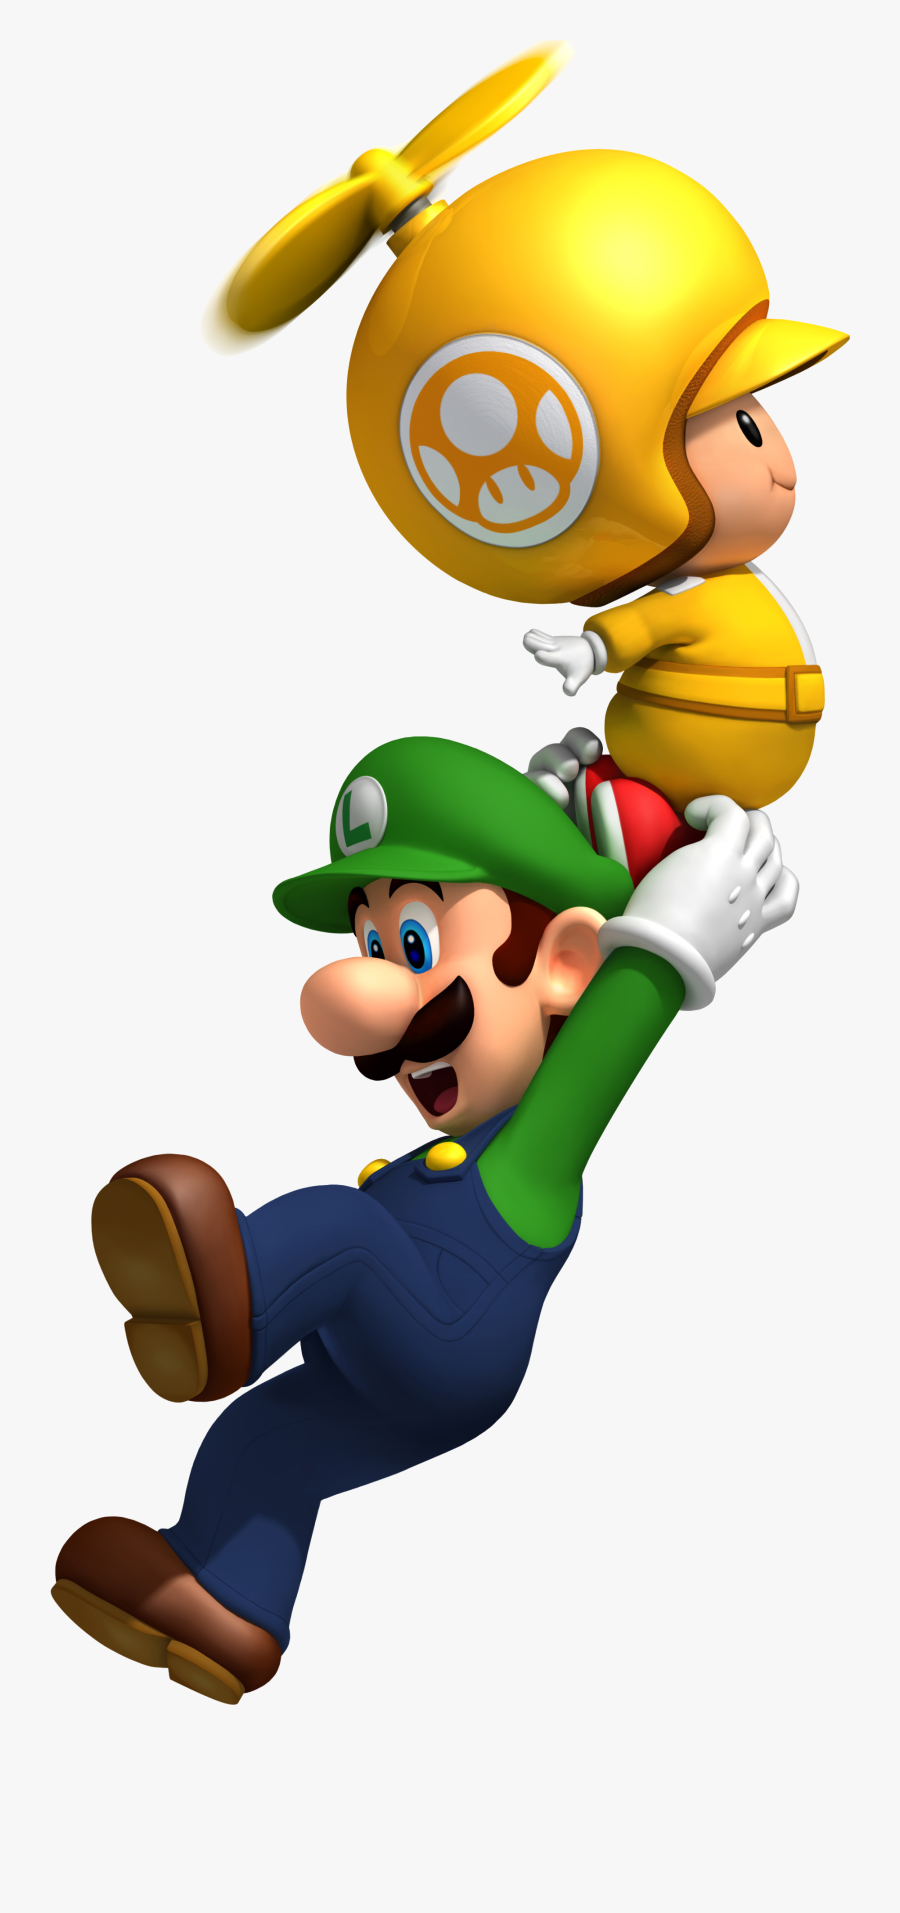 New Super Mario Bros - New Super Mario Bros Wii Flying, Transparent Clipart